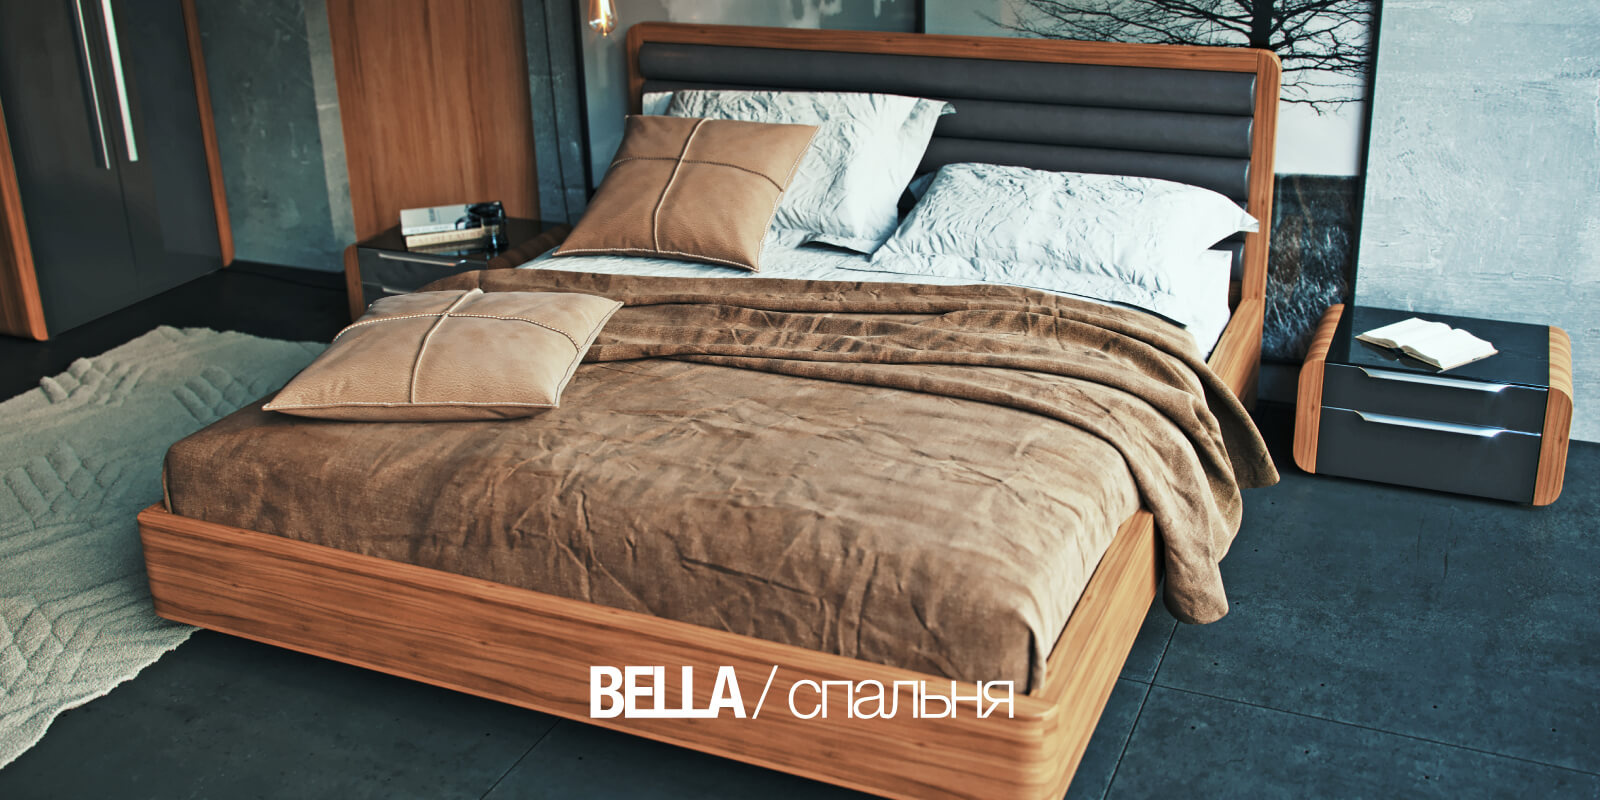 Кровать Bella Parra